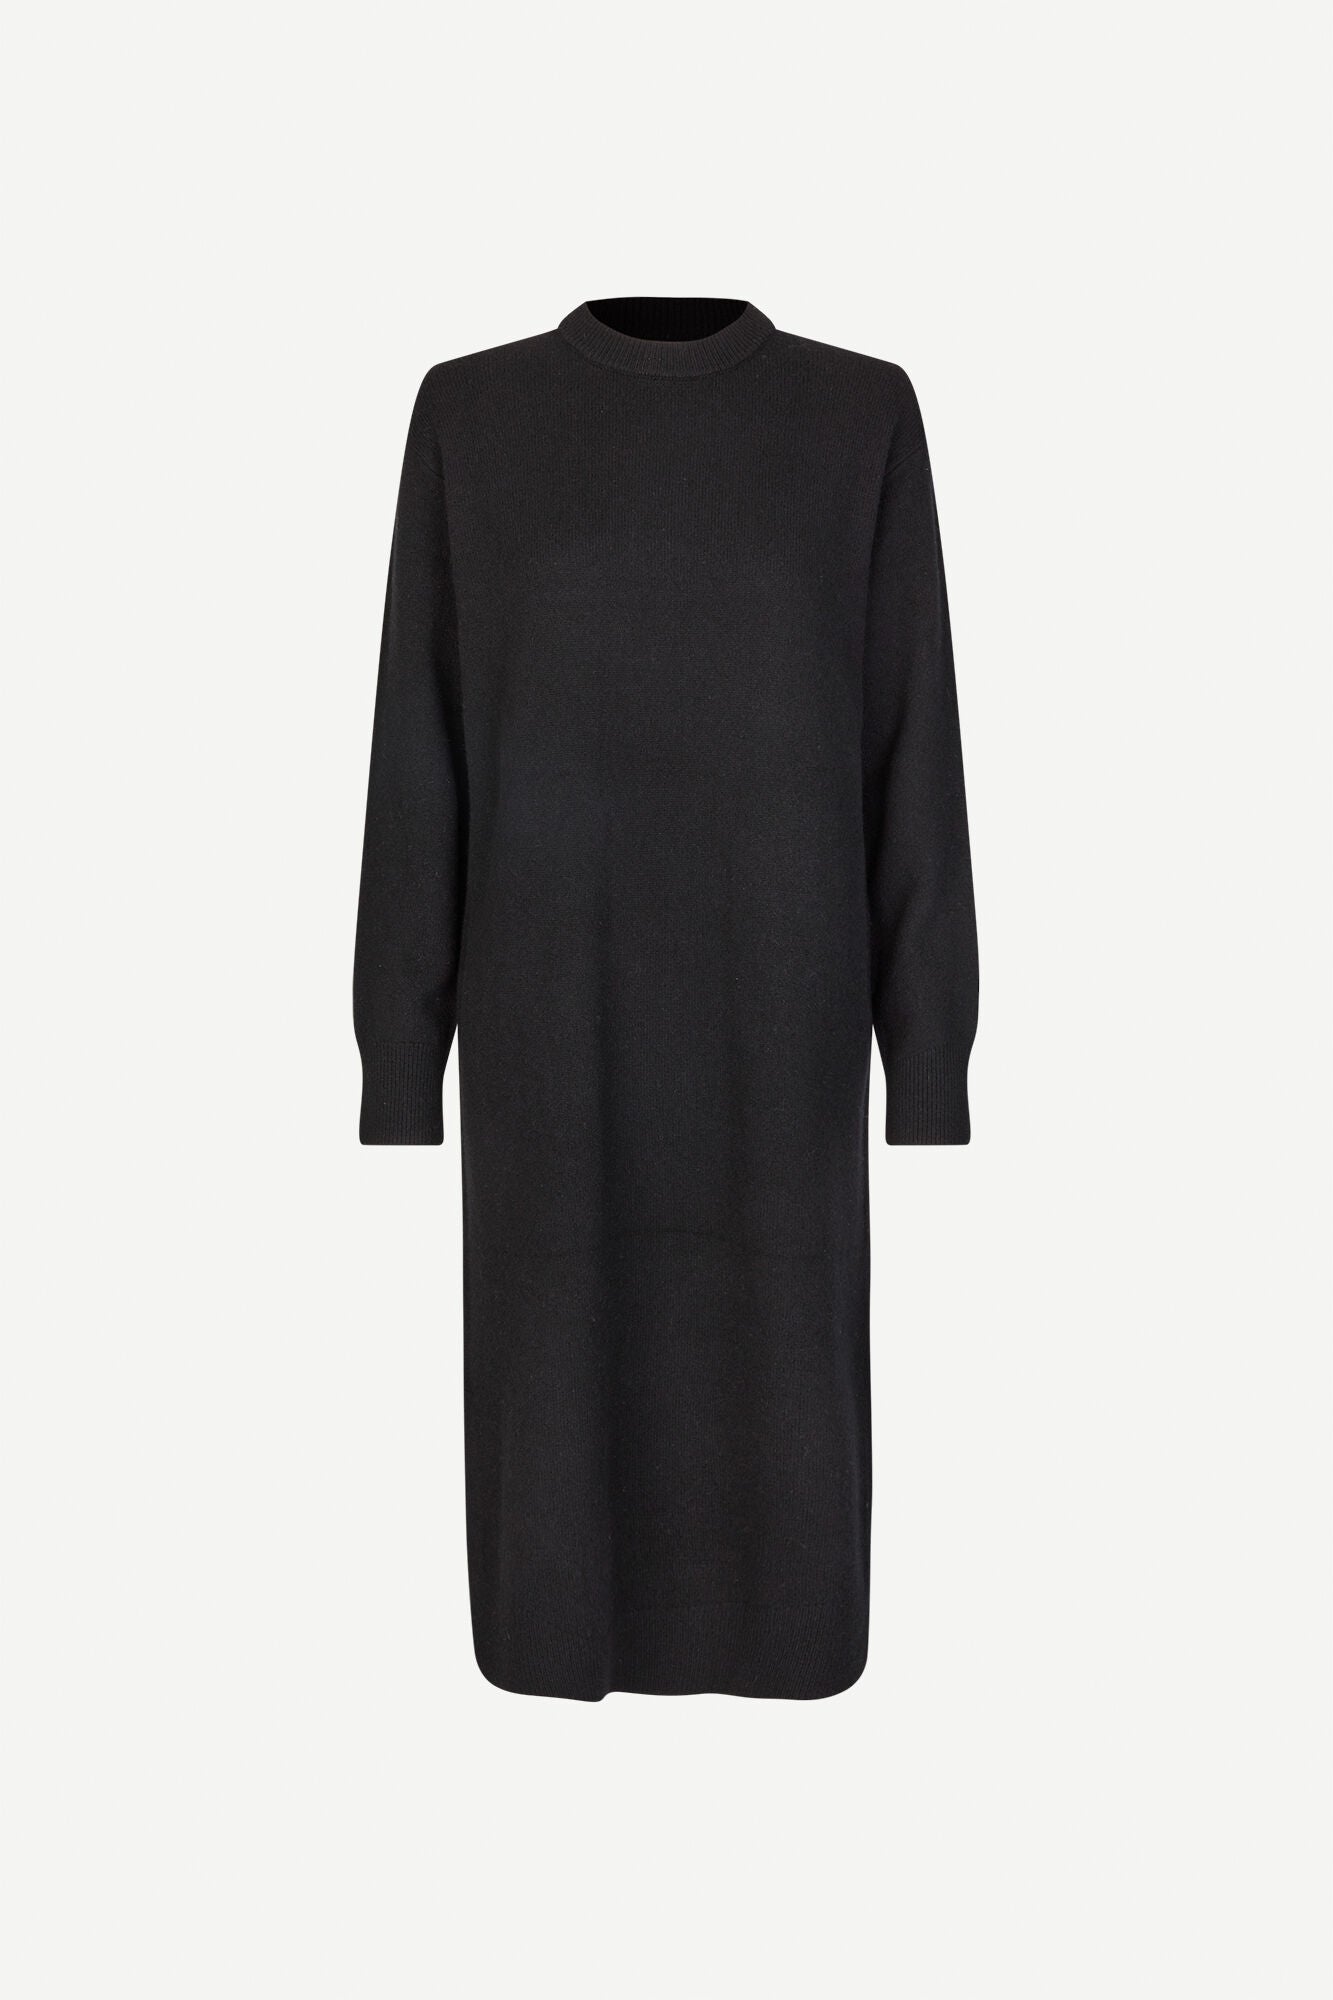 Merino wool dress in black